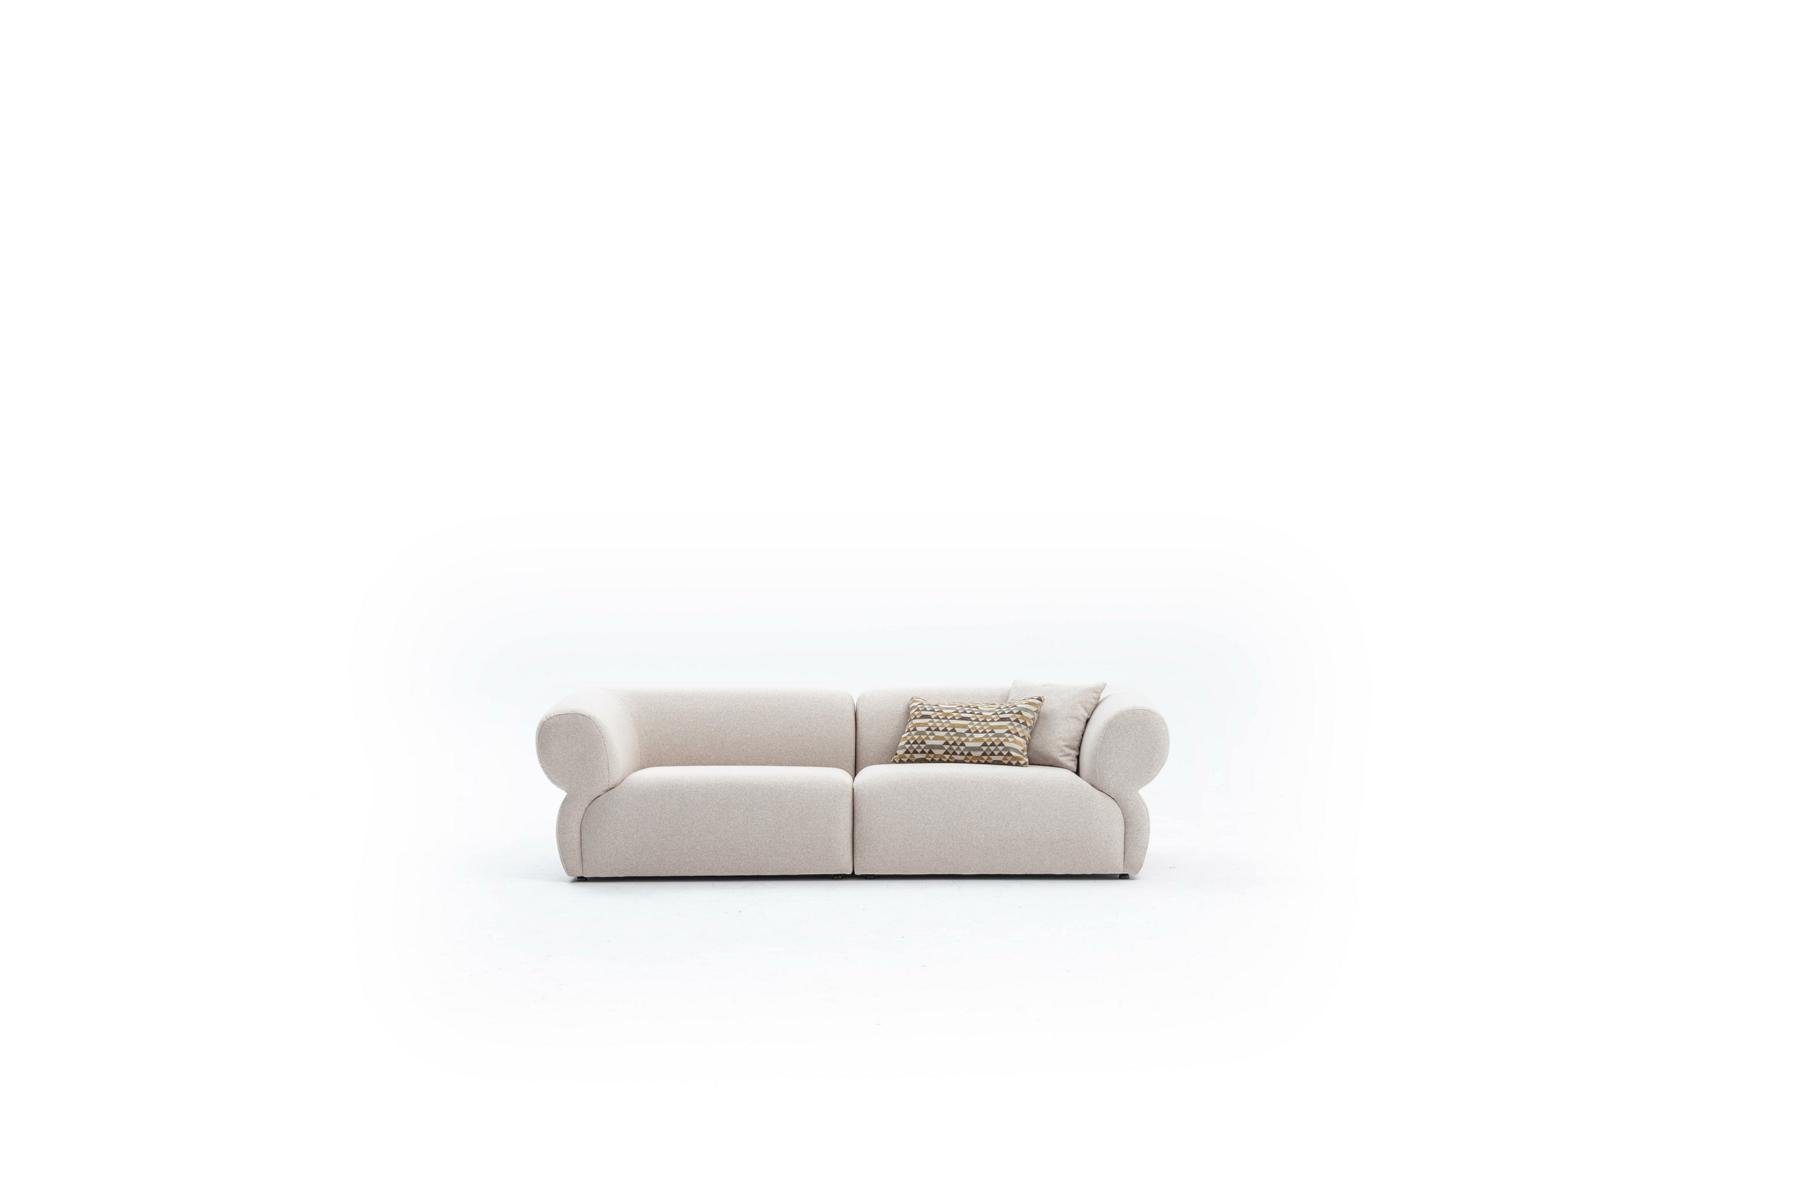 JVmoebel 3-Sitzer Beige Sofa Polster Möbel Dreisitzer 3 Sitzer Modern Design Couch, Made in Europe